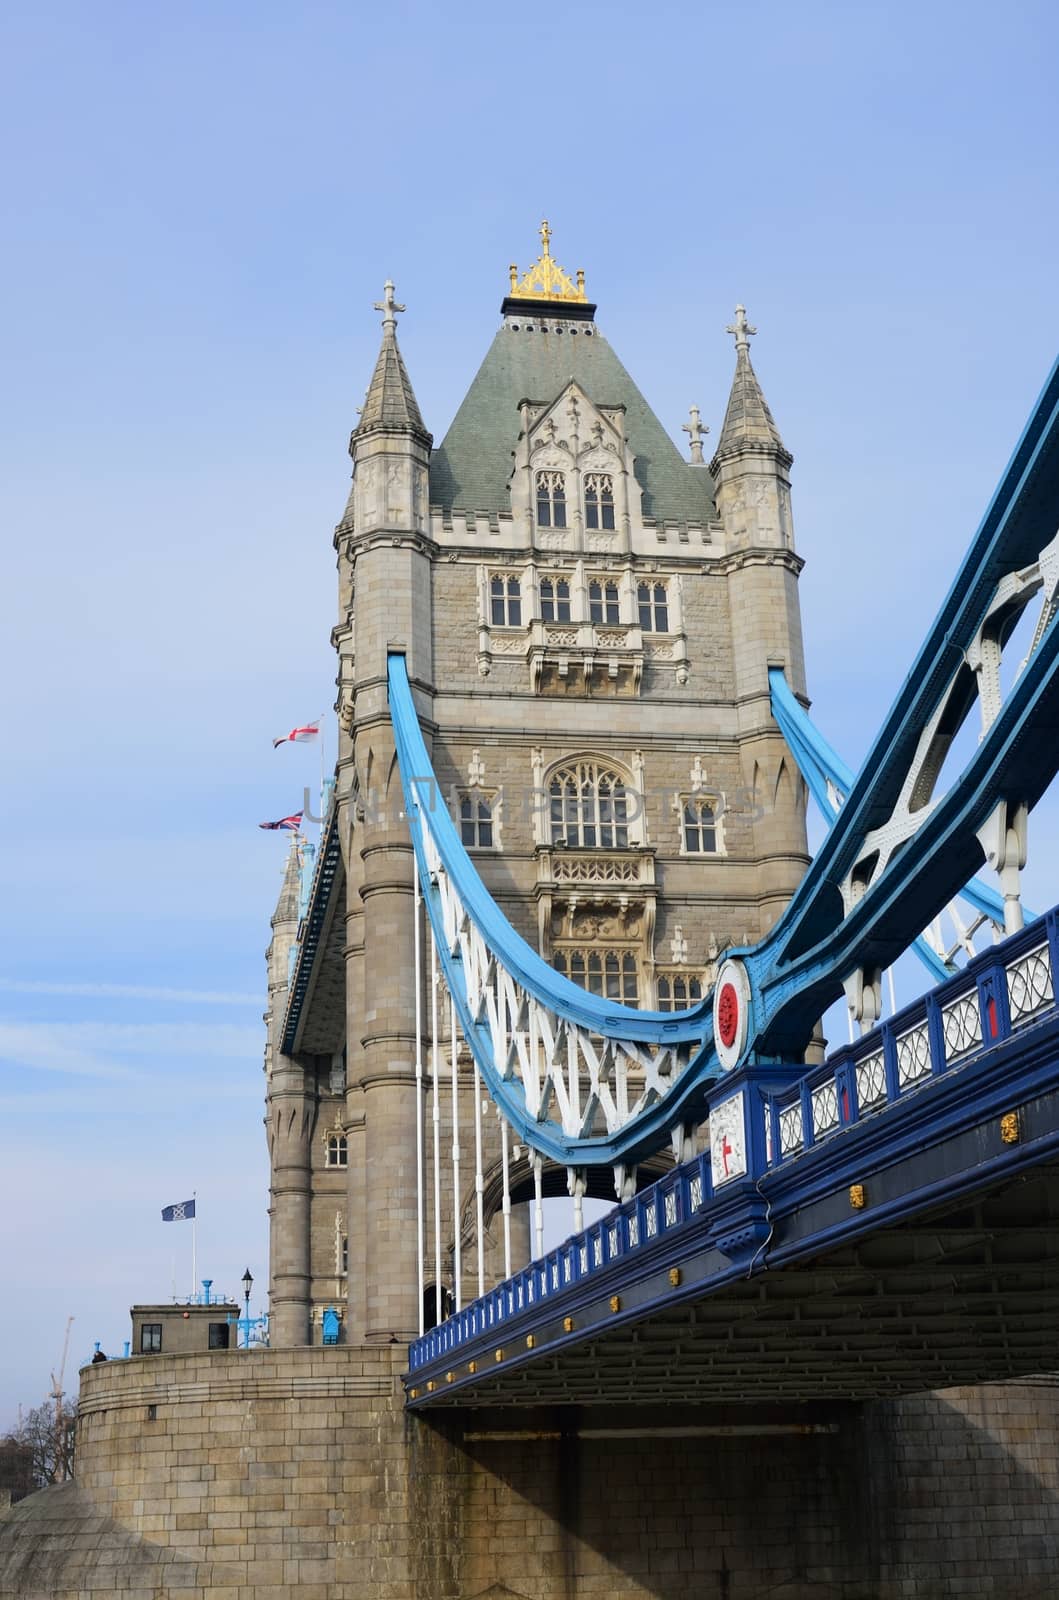 Portrait view of Tower Bridge